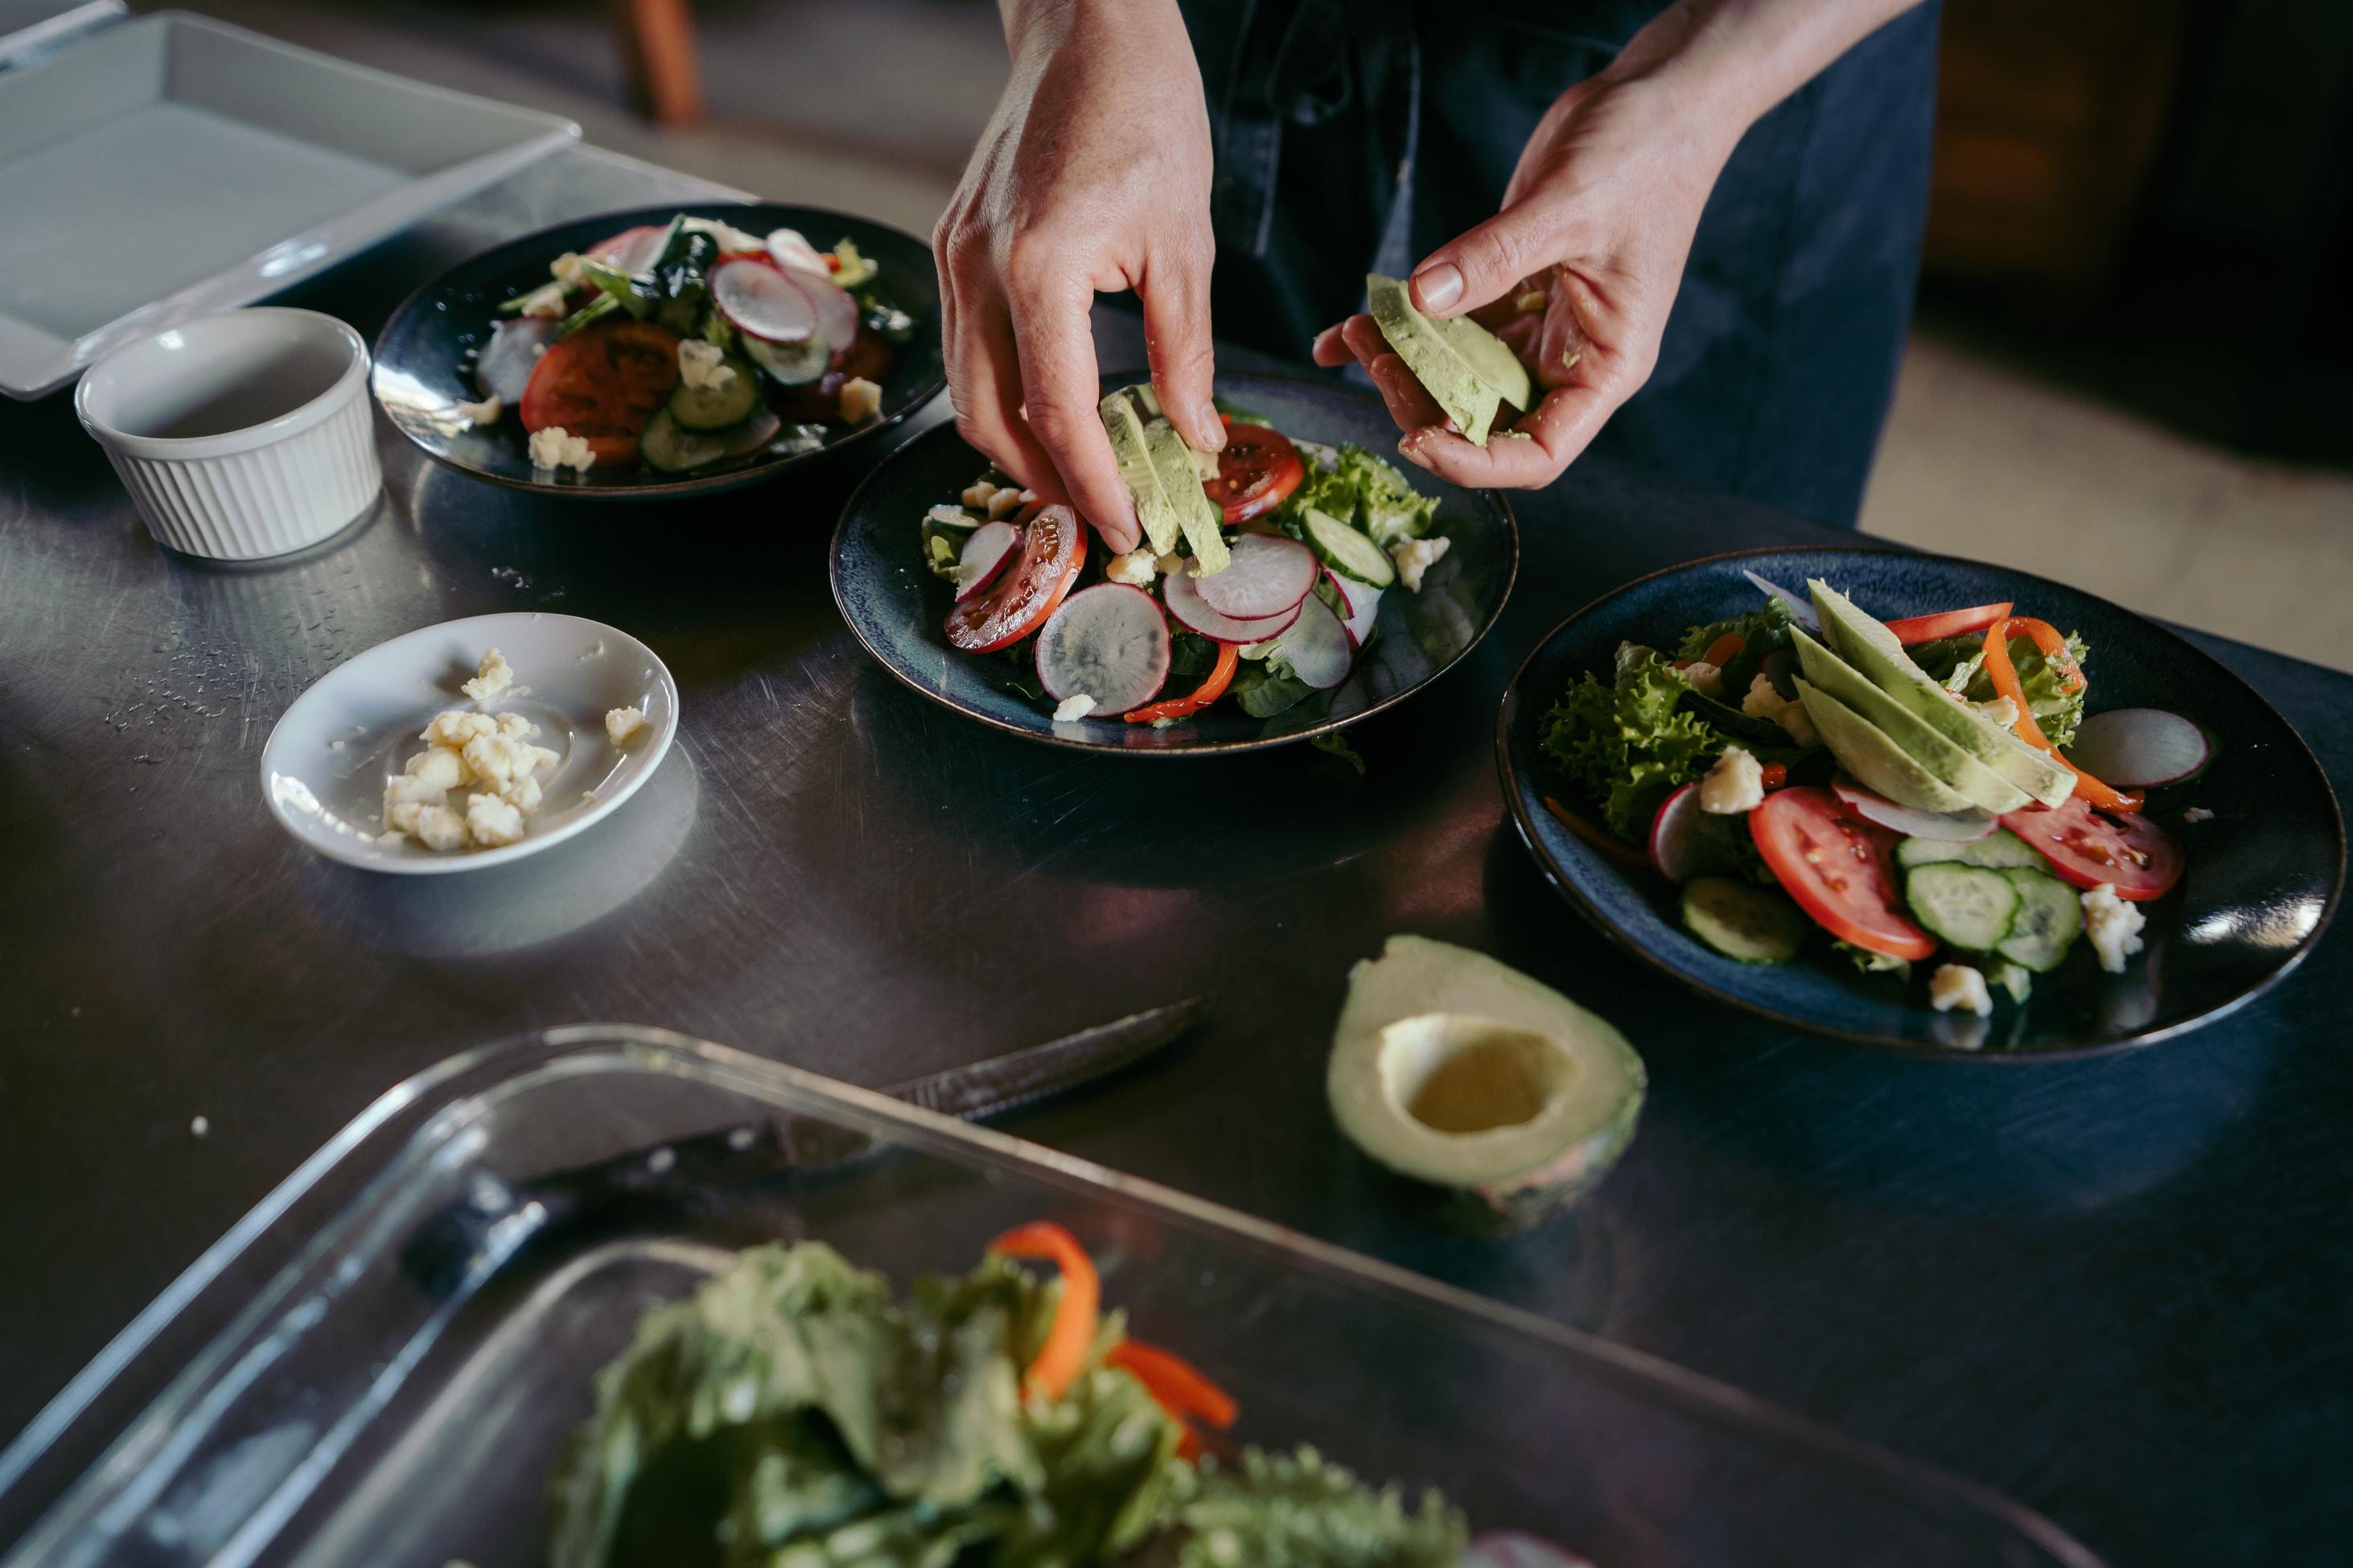 Une personne place des tranches d’avocat dans trois bols à salade bleus remplis de légumes verts, de tomates, de poivrons rouges, de navet et de fromage.